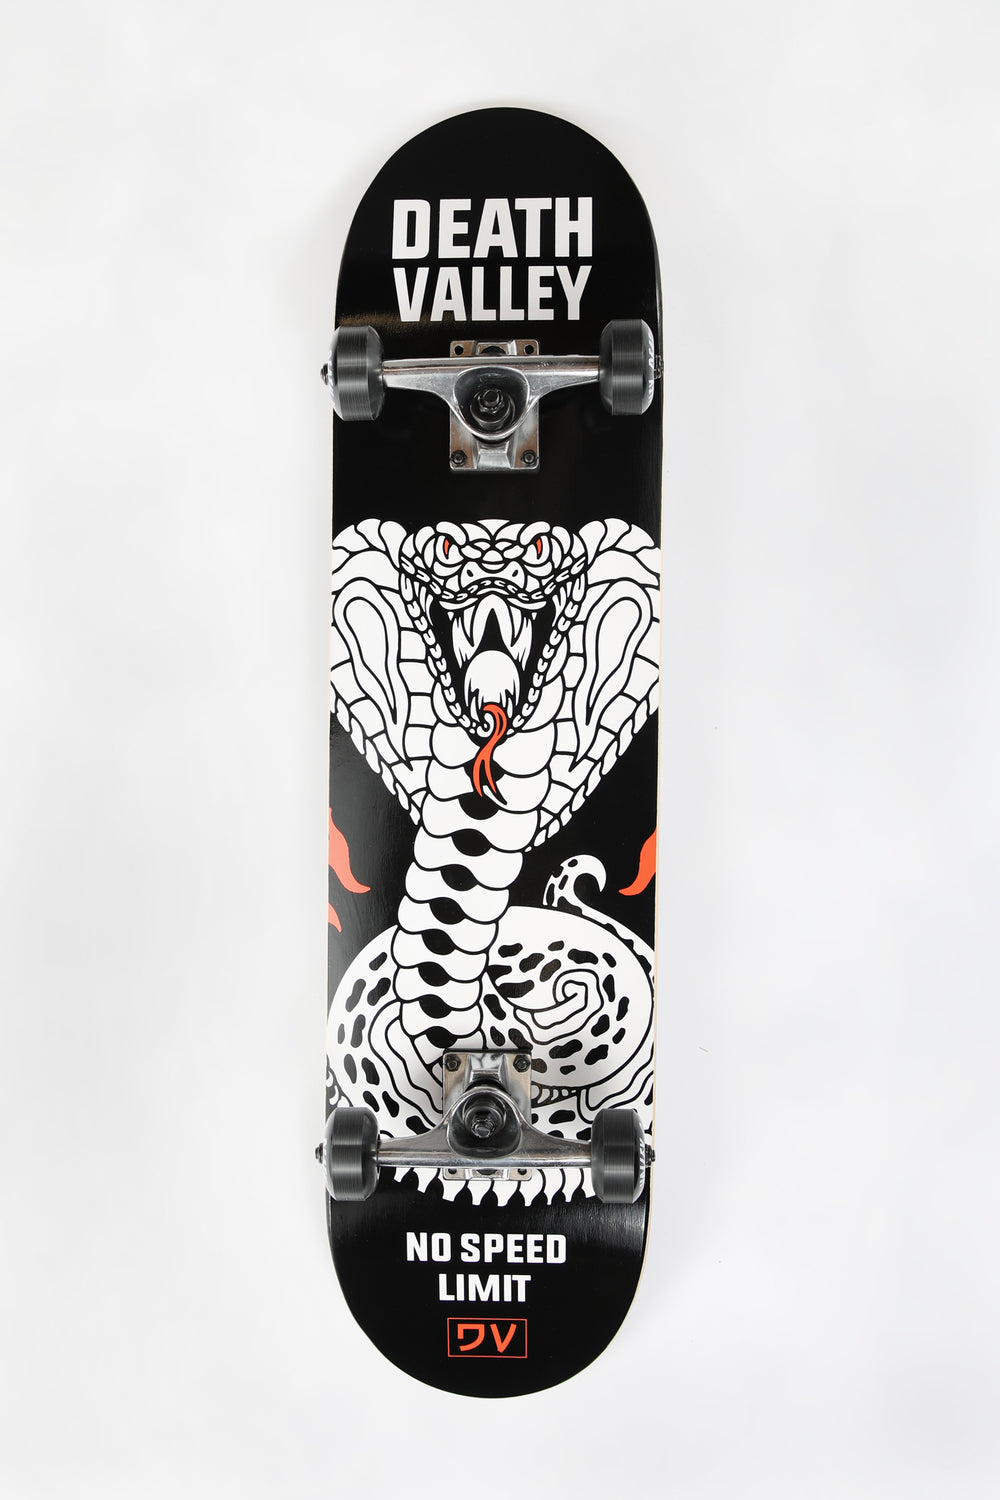 Skateboard No Speed Limit Death Valley 7.75